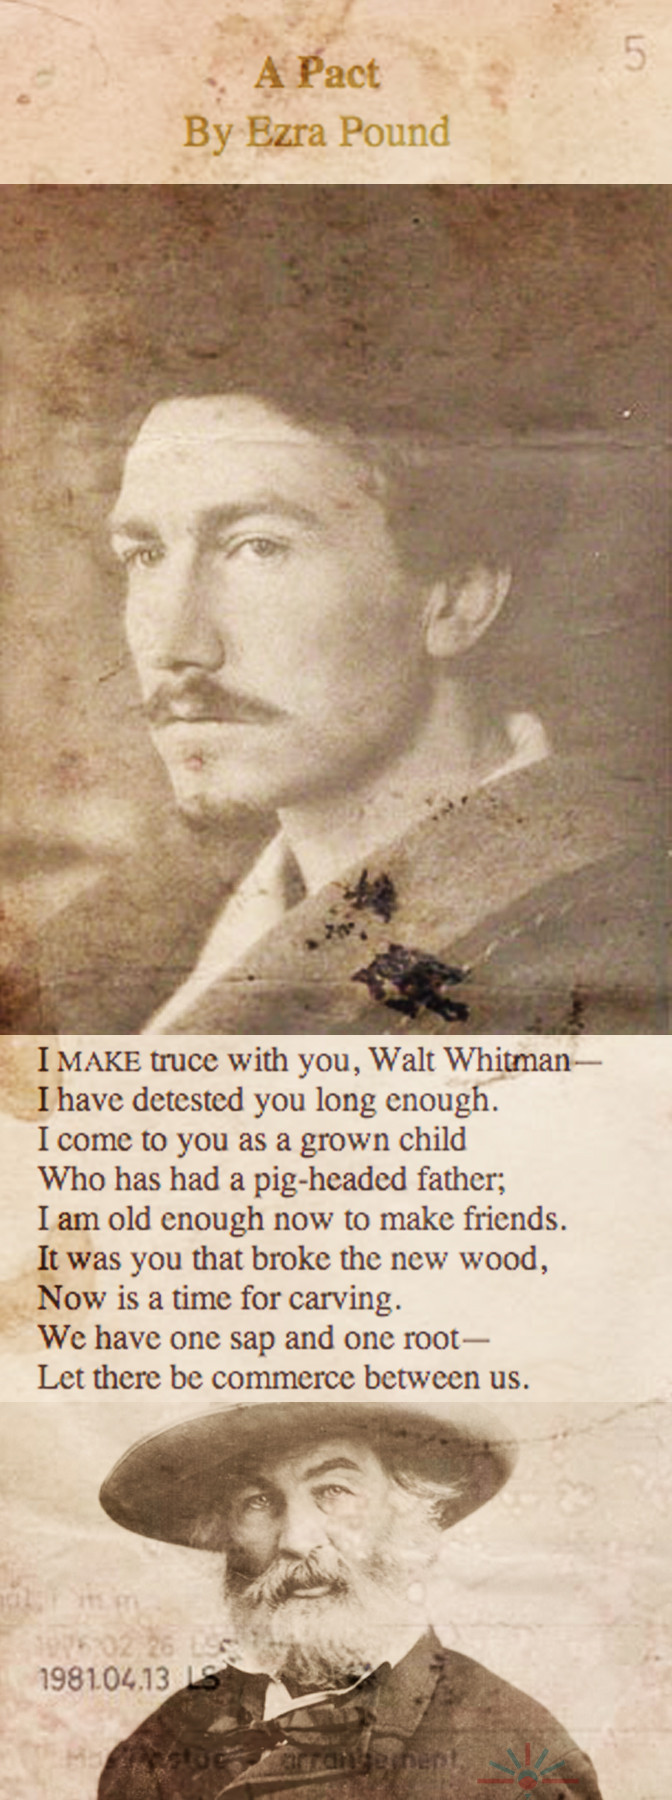  Ezra Pound and Walt Whitman